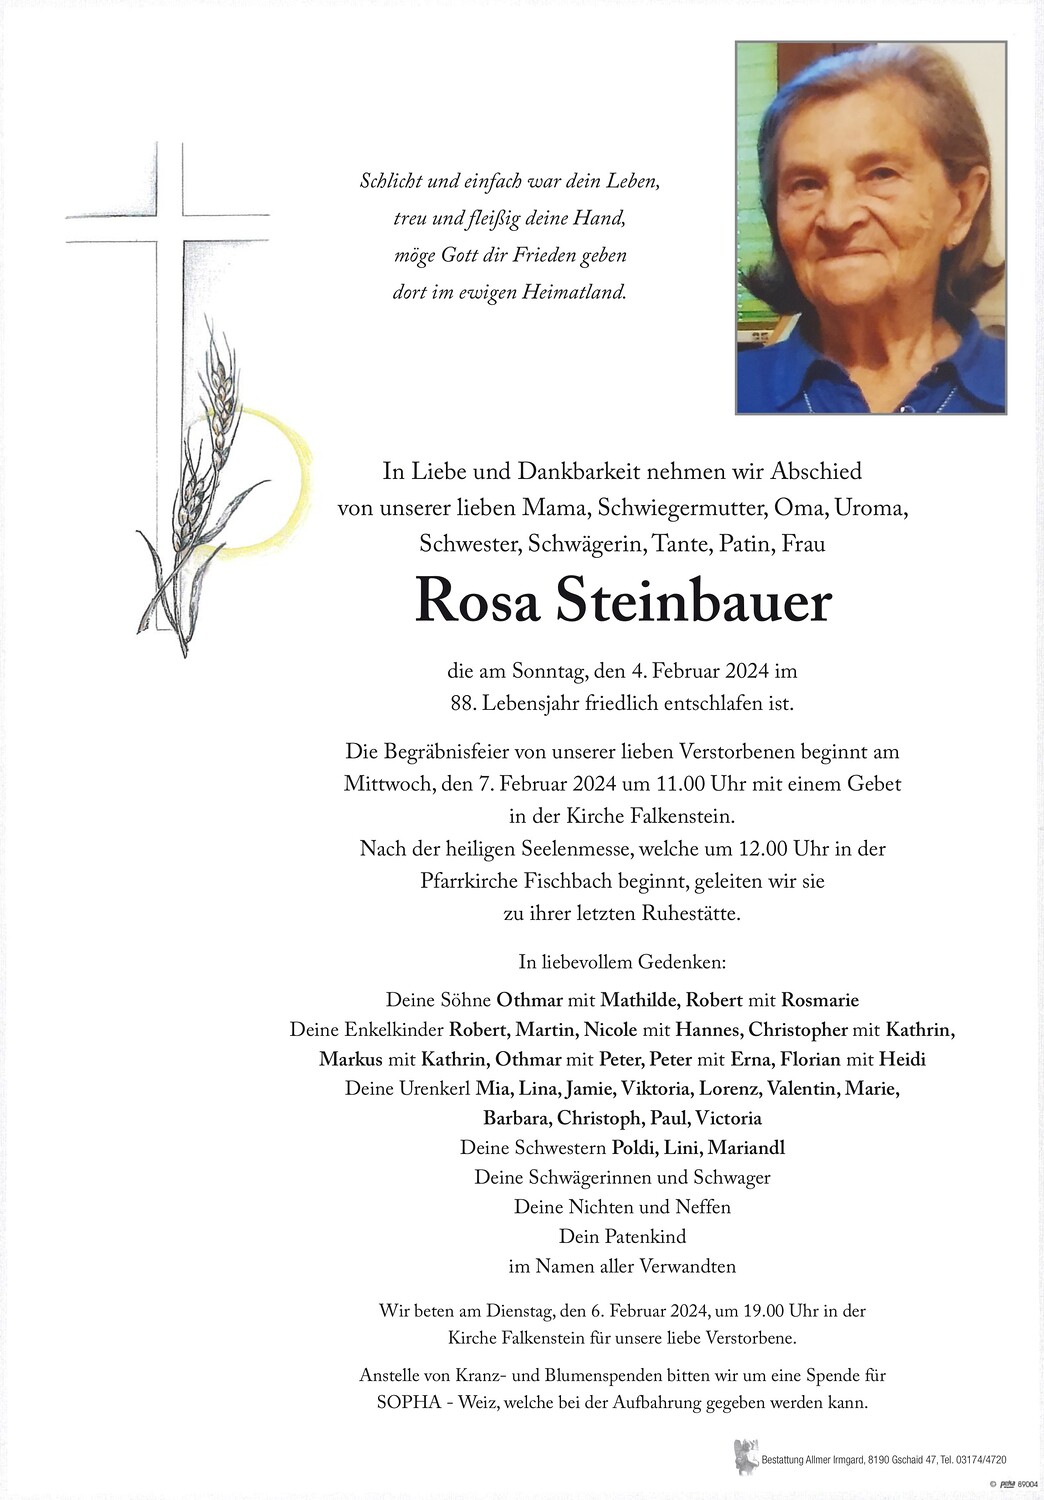 Rosa_Steinbauer-Rosa_Steinbauer.jpg